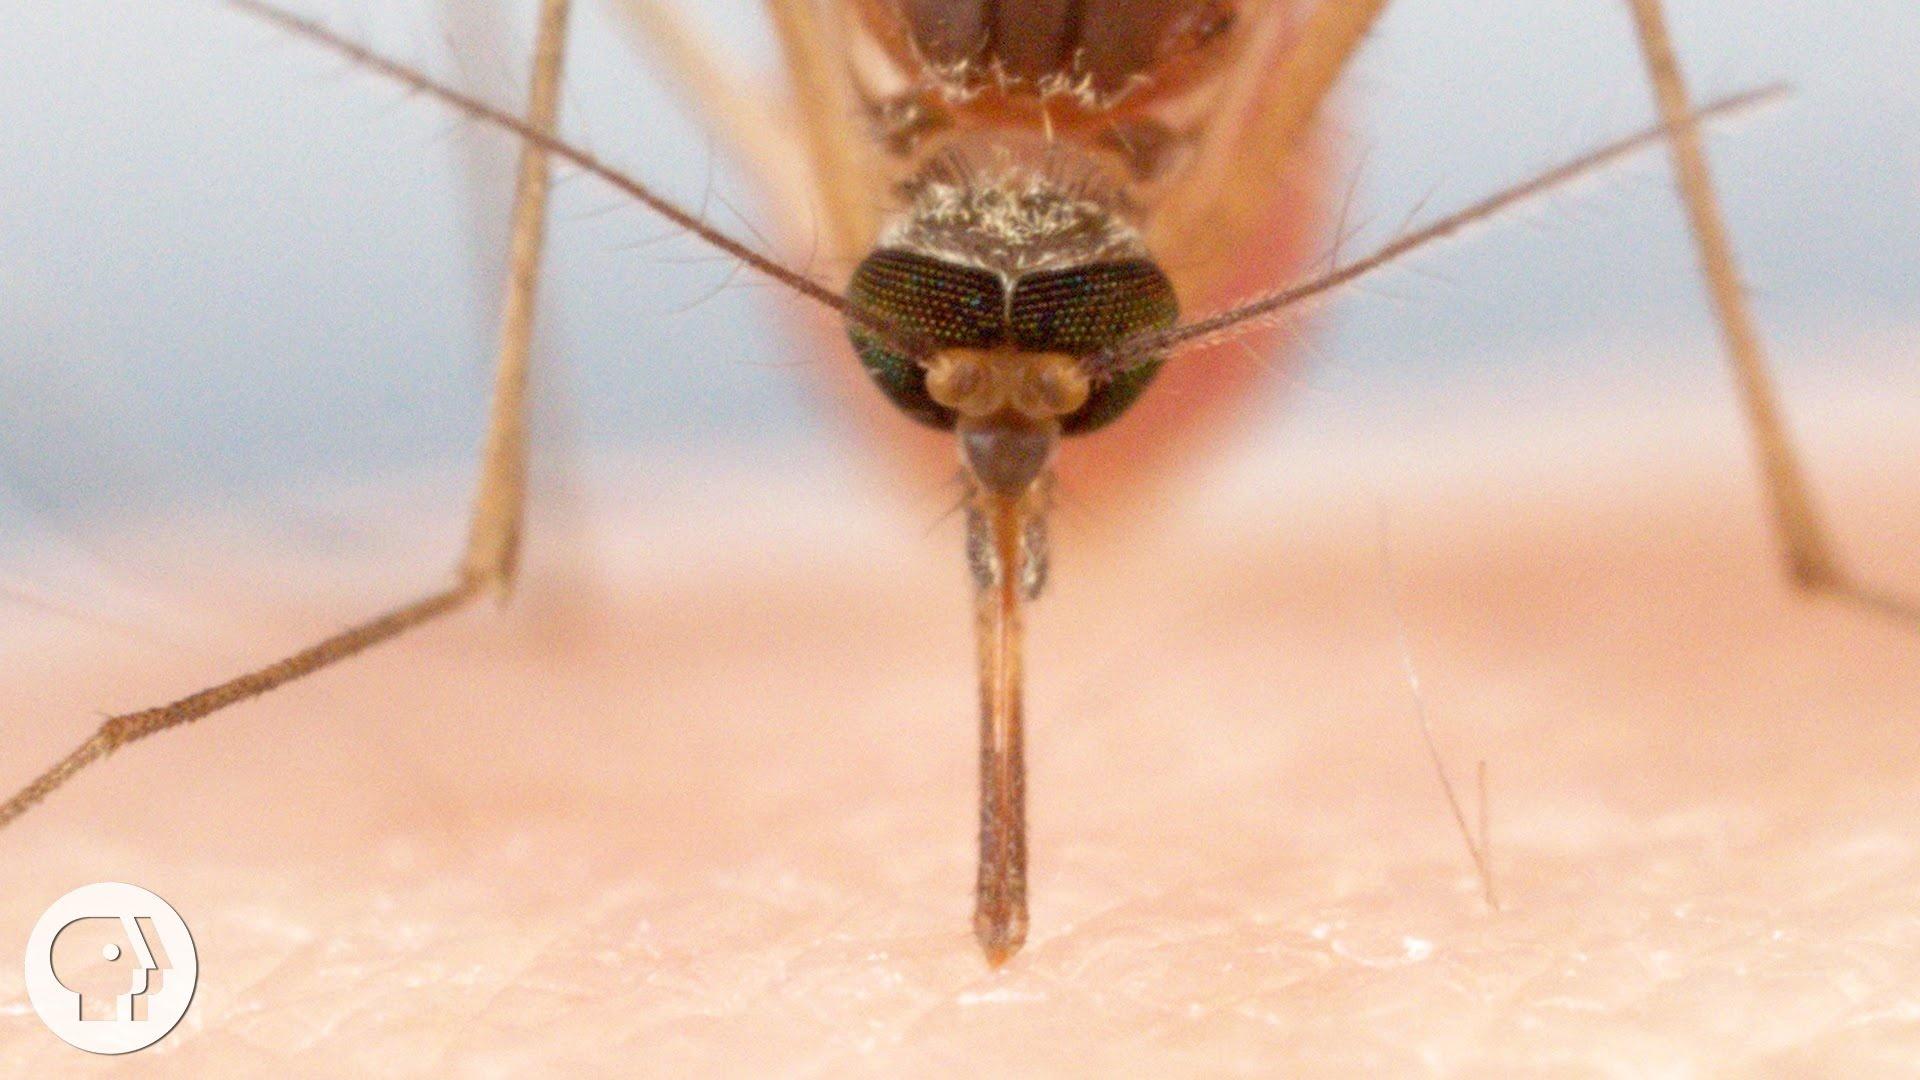 mosquito bite diagram